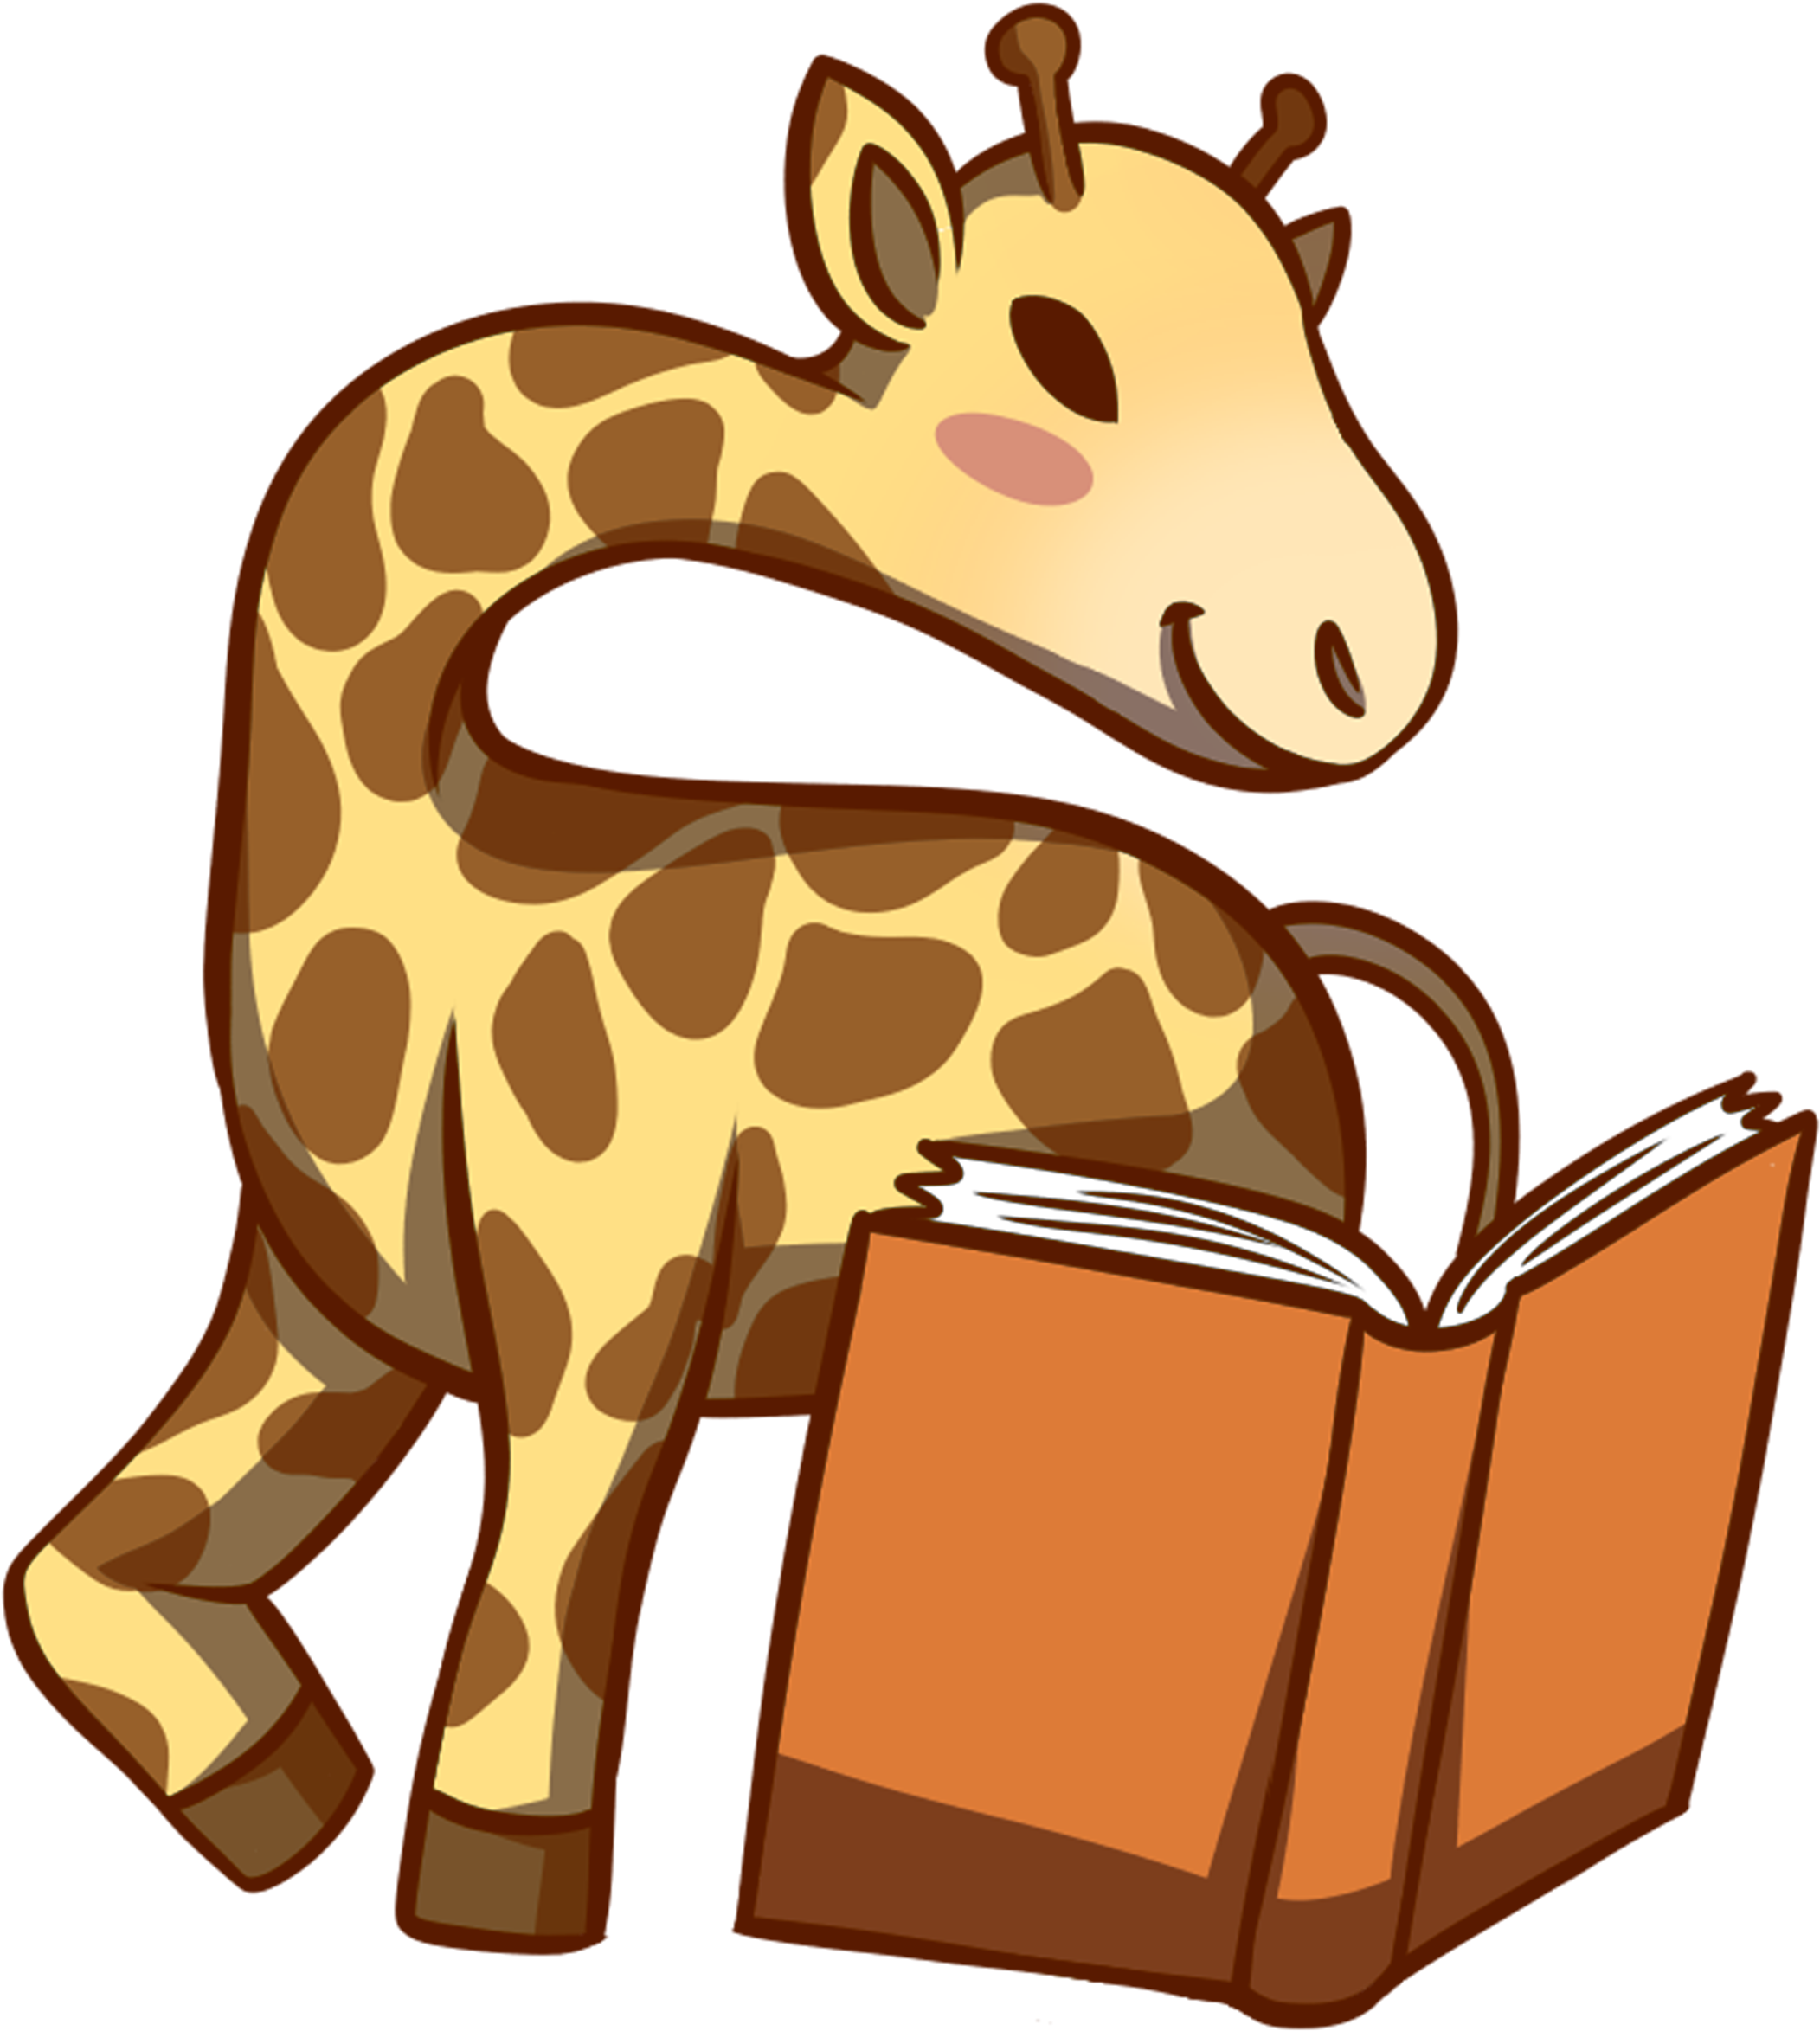 Giraffe Reading Book - Giraffe Reading A Book Clipart, Hd Png Download